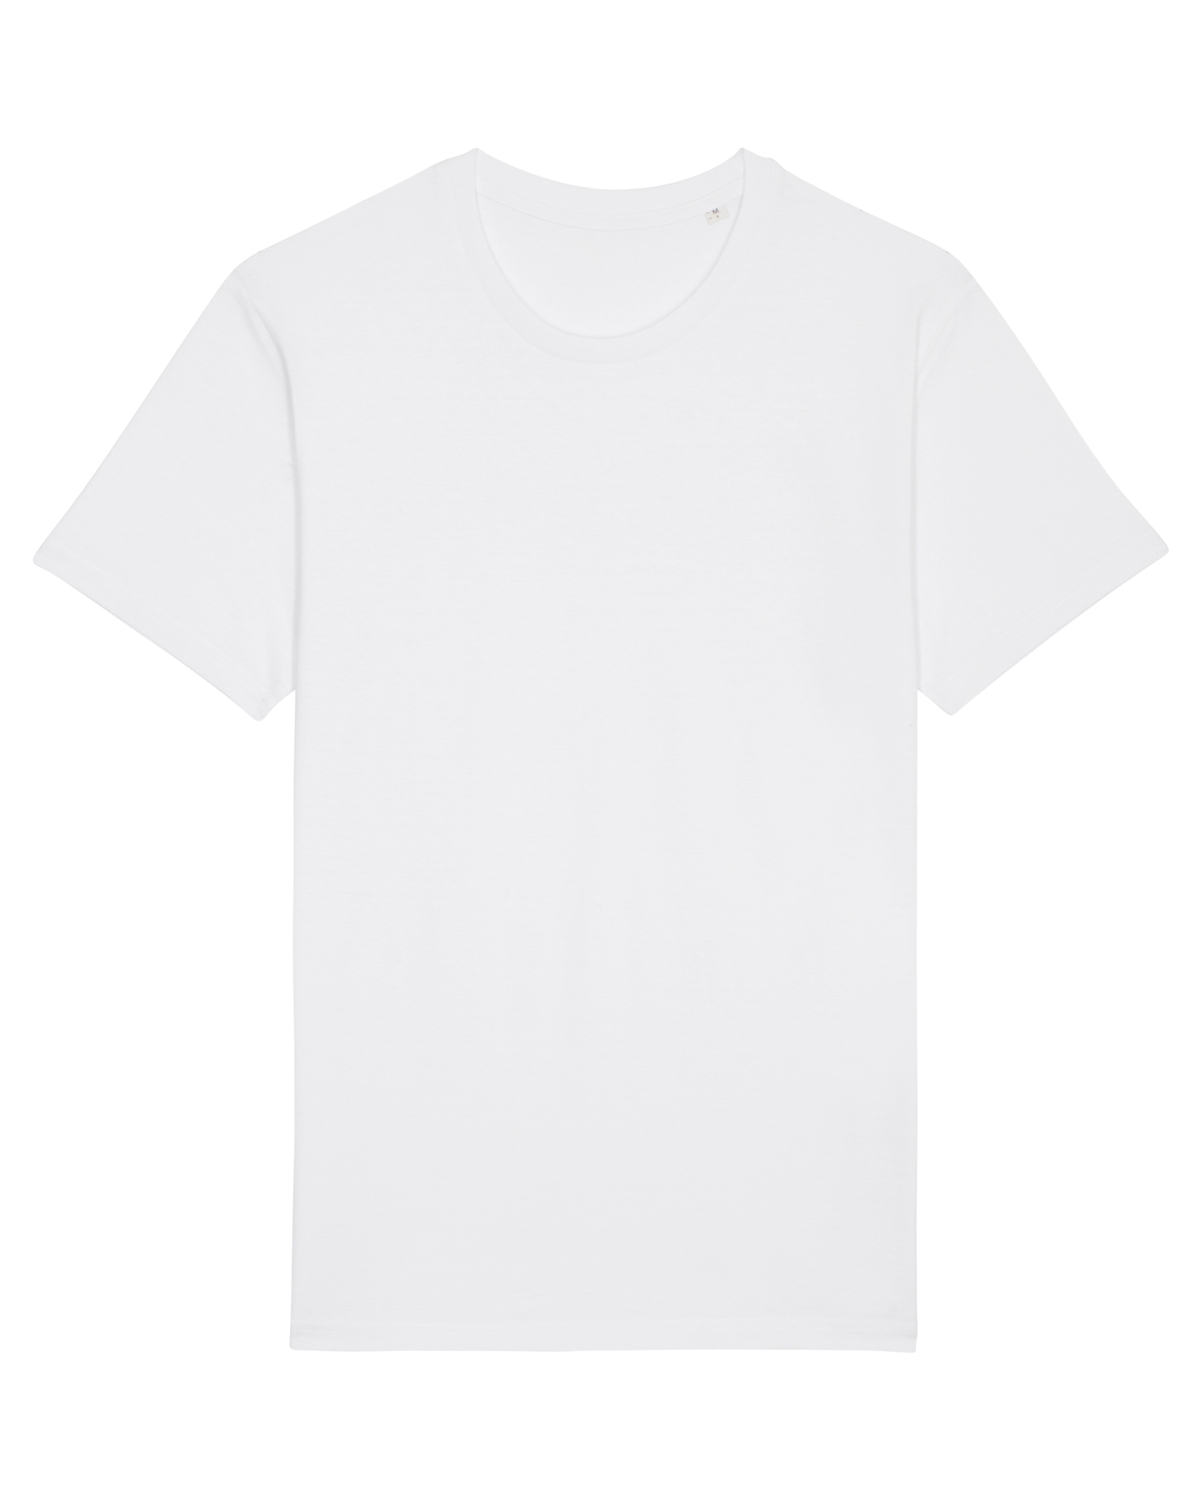 maglietta bianca gem boy torrent